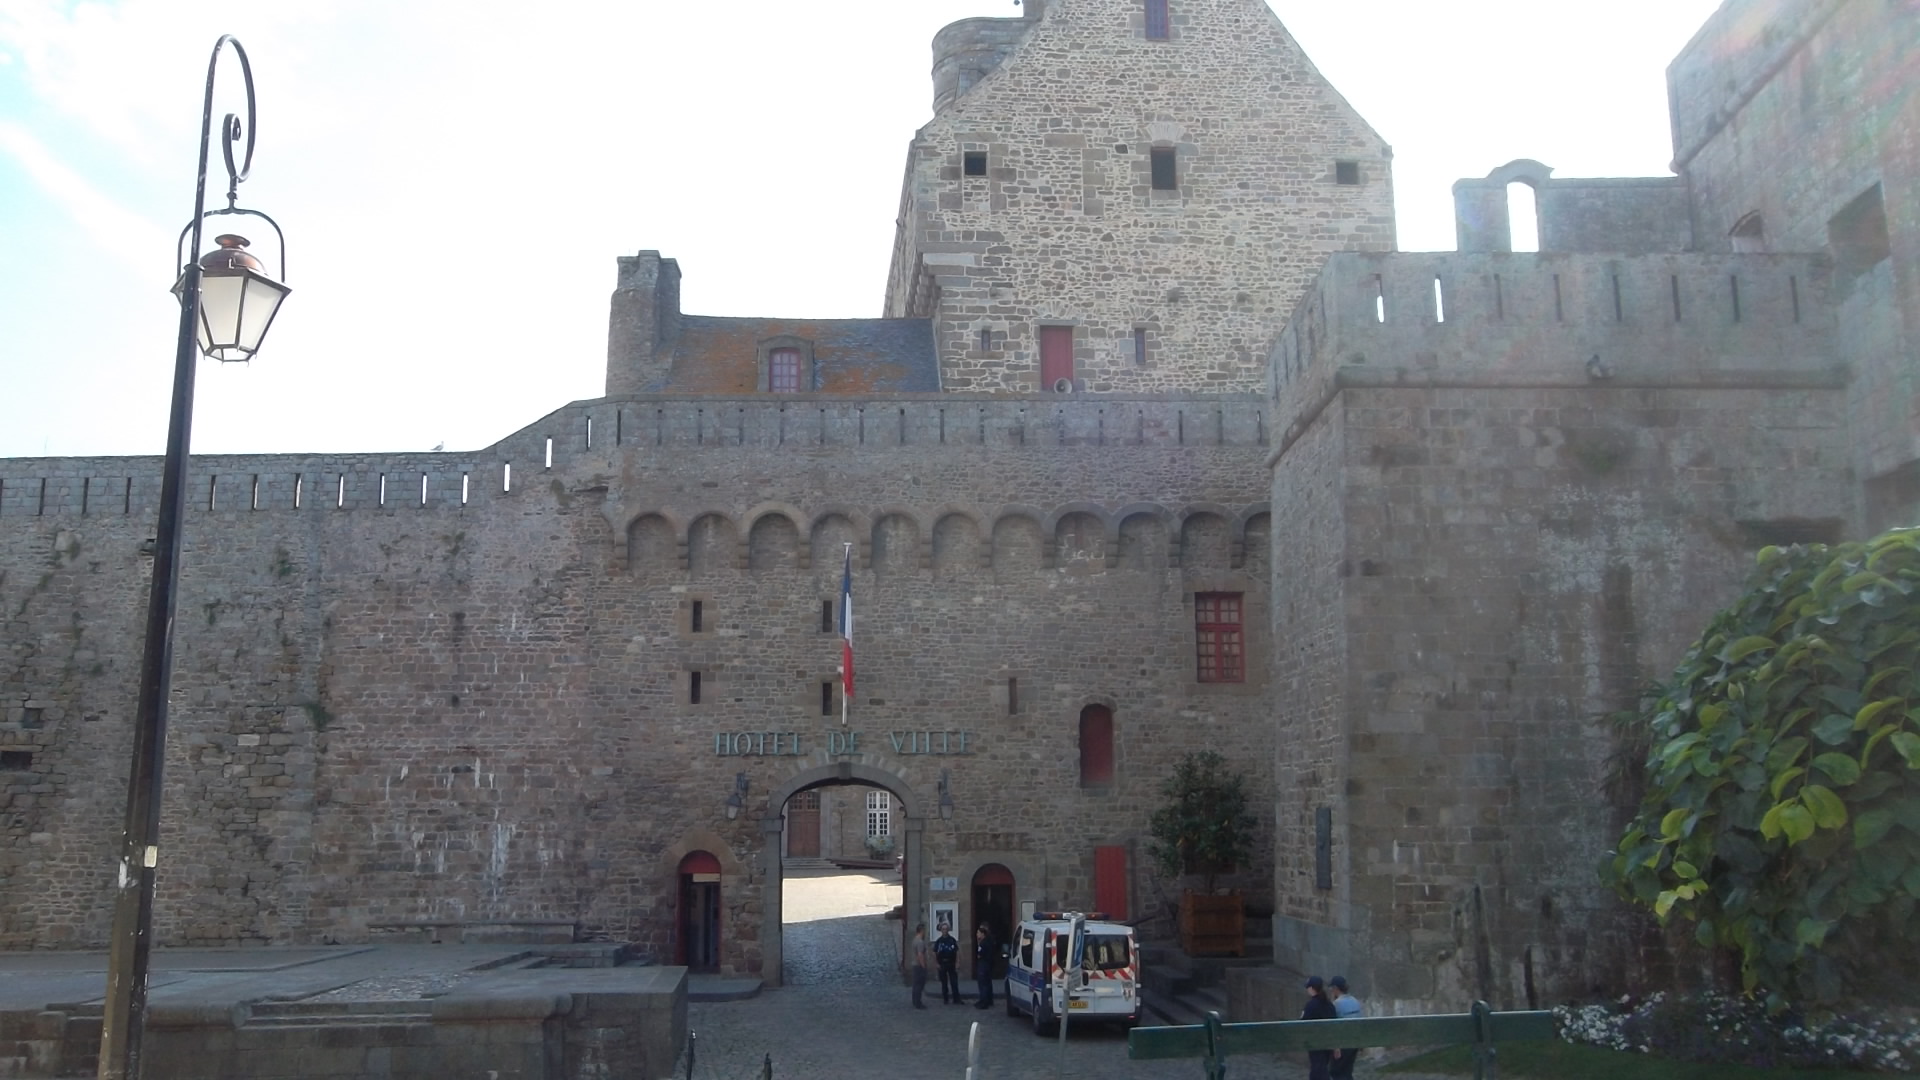 St Malo chateau anne de bretagne hotel de ville et entr to museum chateau aug12